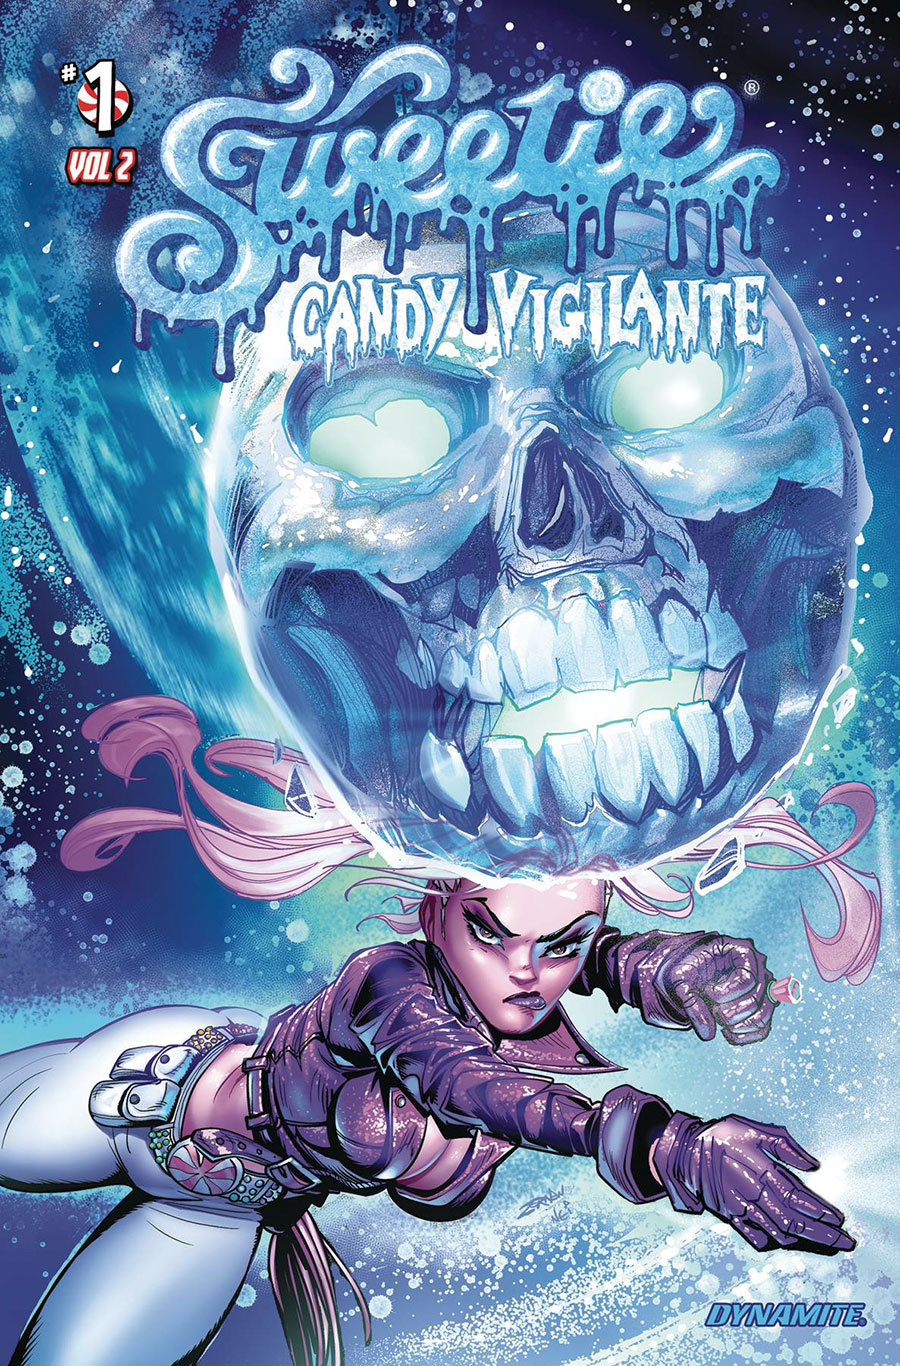 Sweetie Candy Vigilante Vol 2 #1 Cover A Regular Jeff Zornow Cover